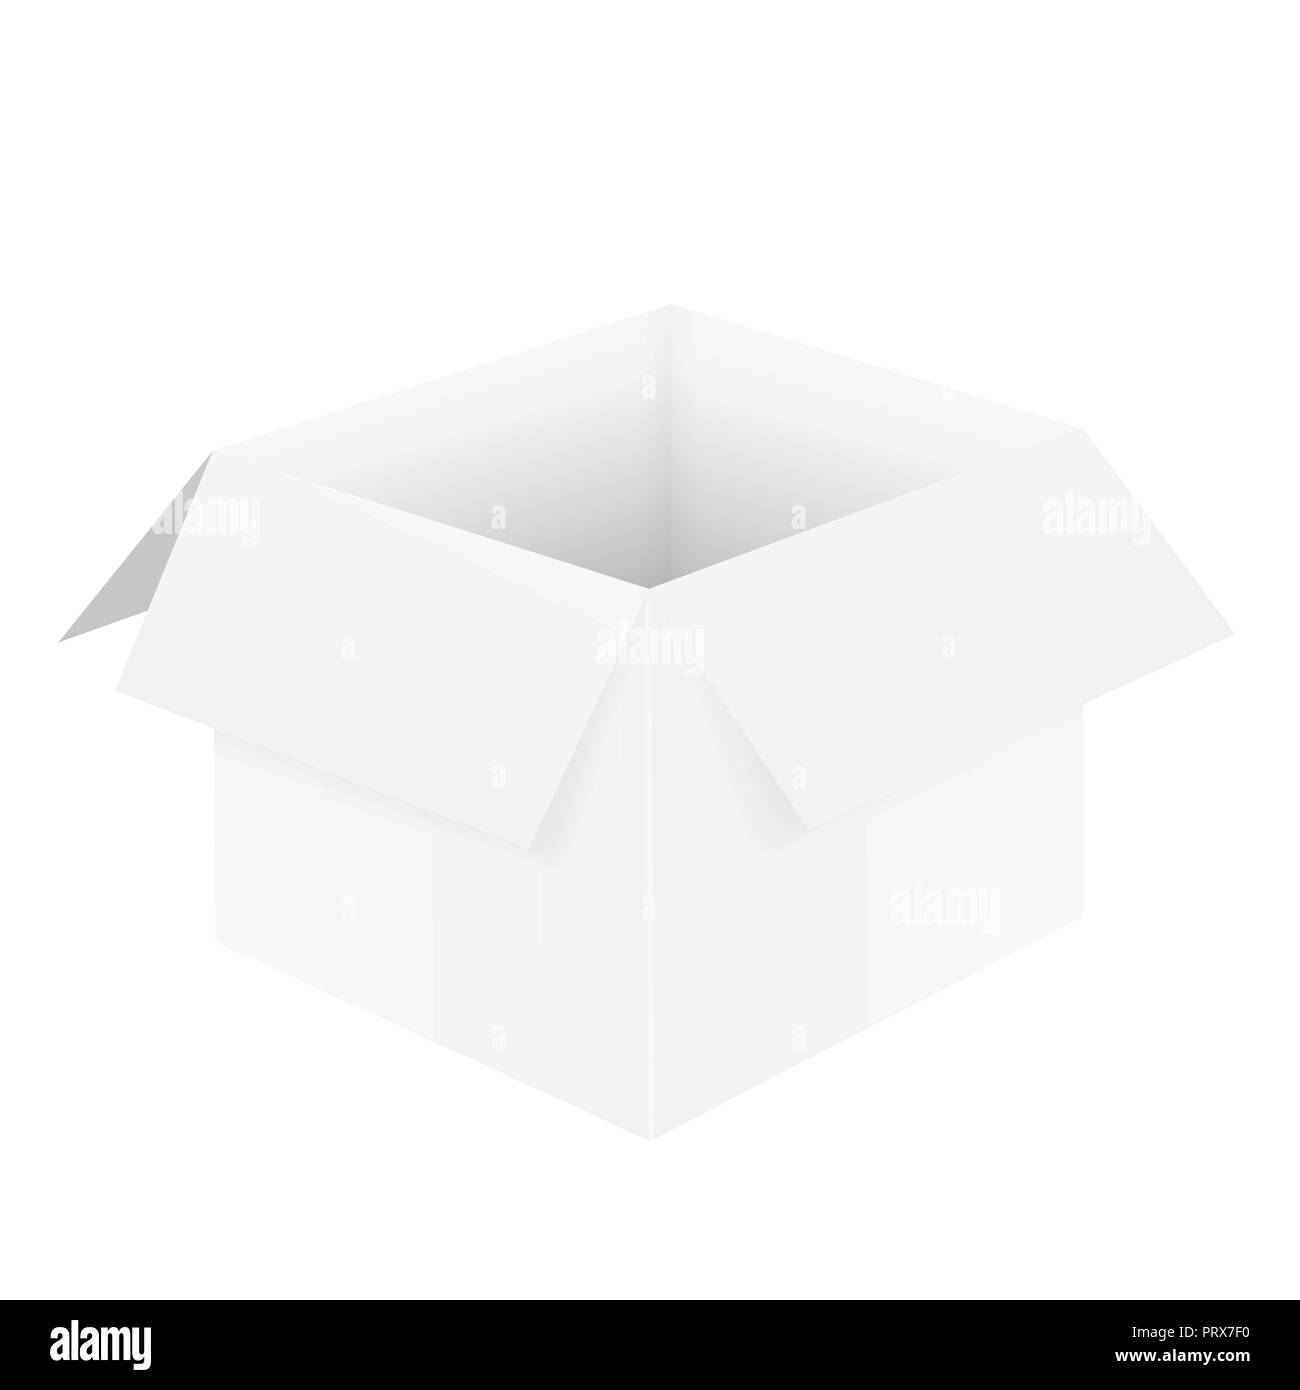 Illustrazione realistica del vuoto bianco di aprire una scatola di cartone, isolati su sfondo bianco - vettore Illustrazione Vettoriale